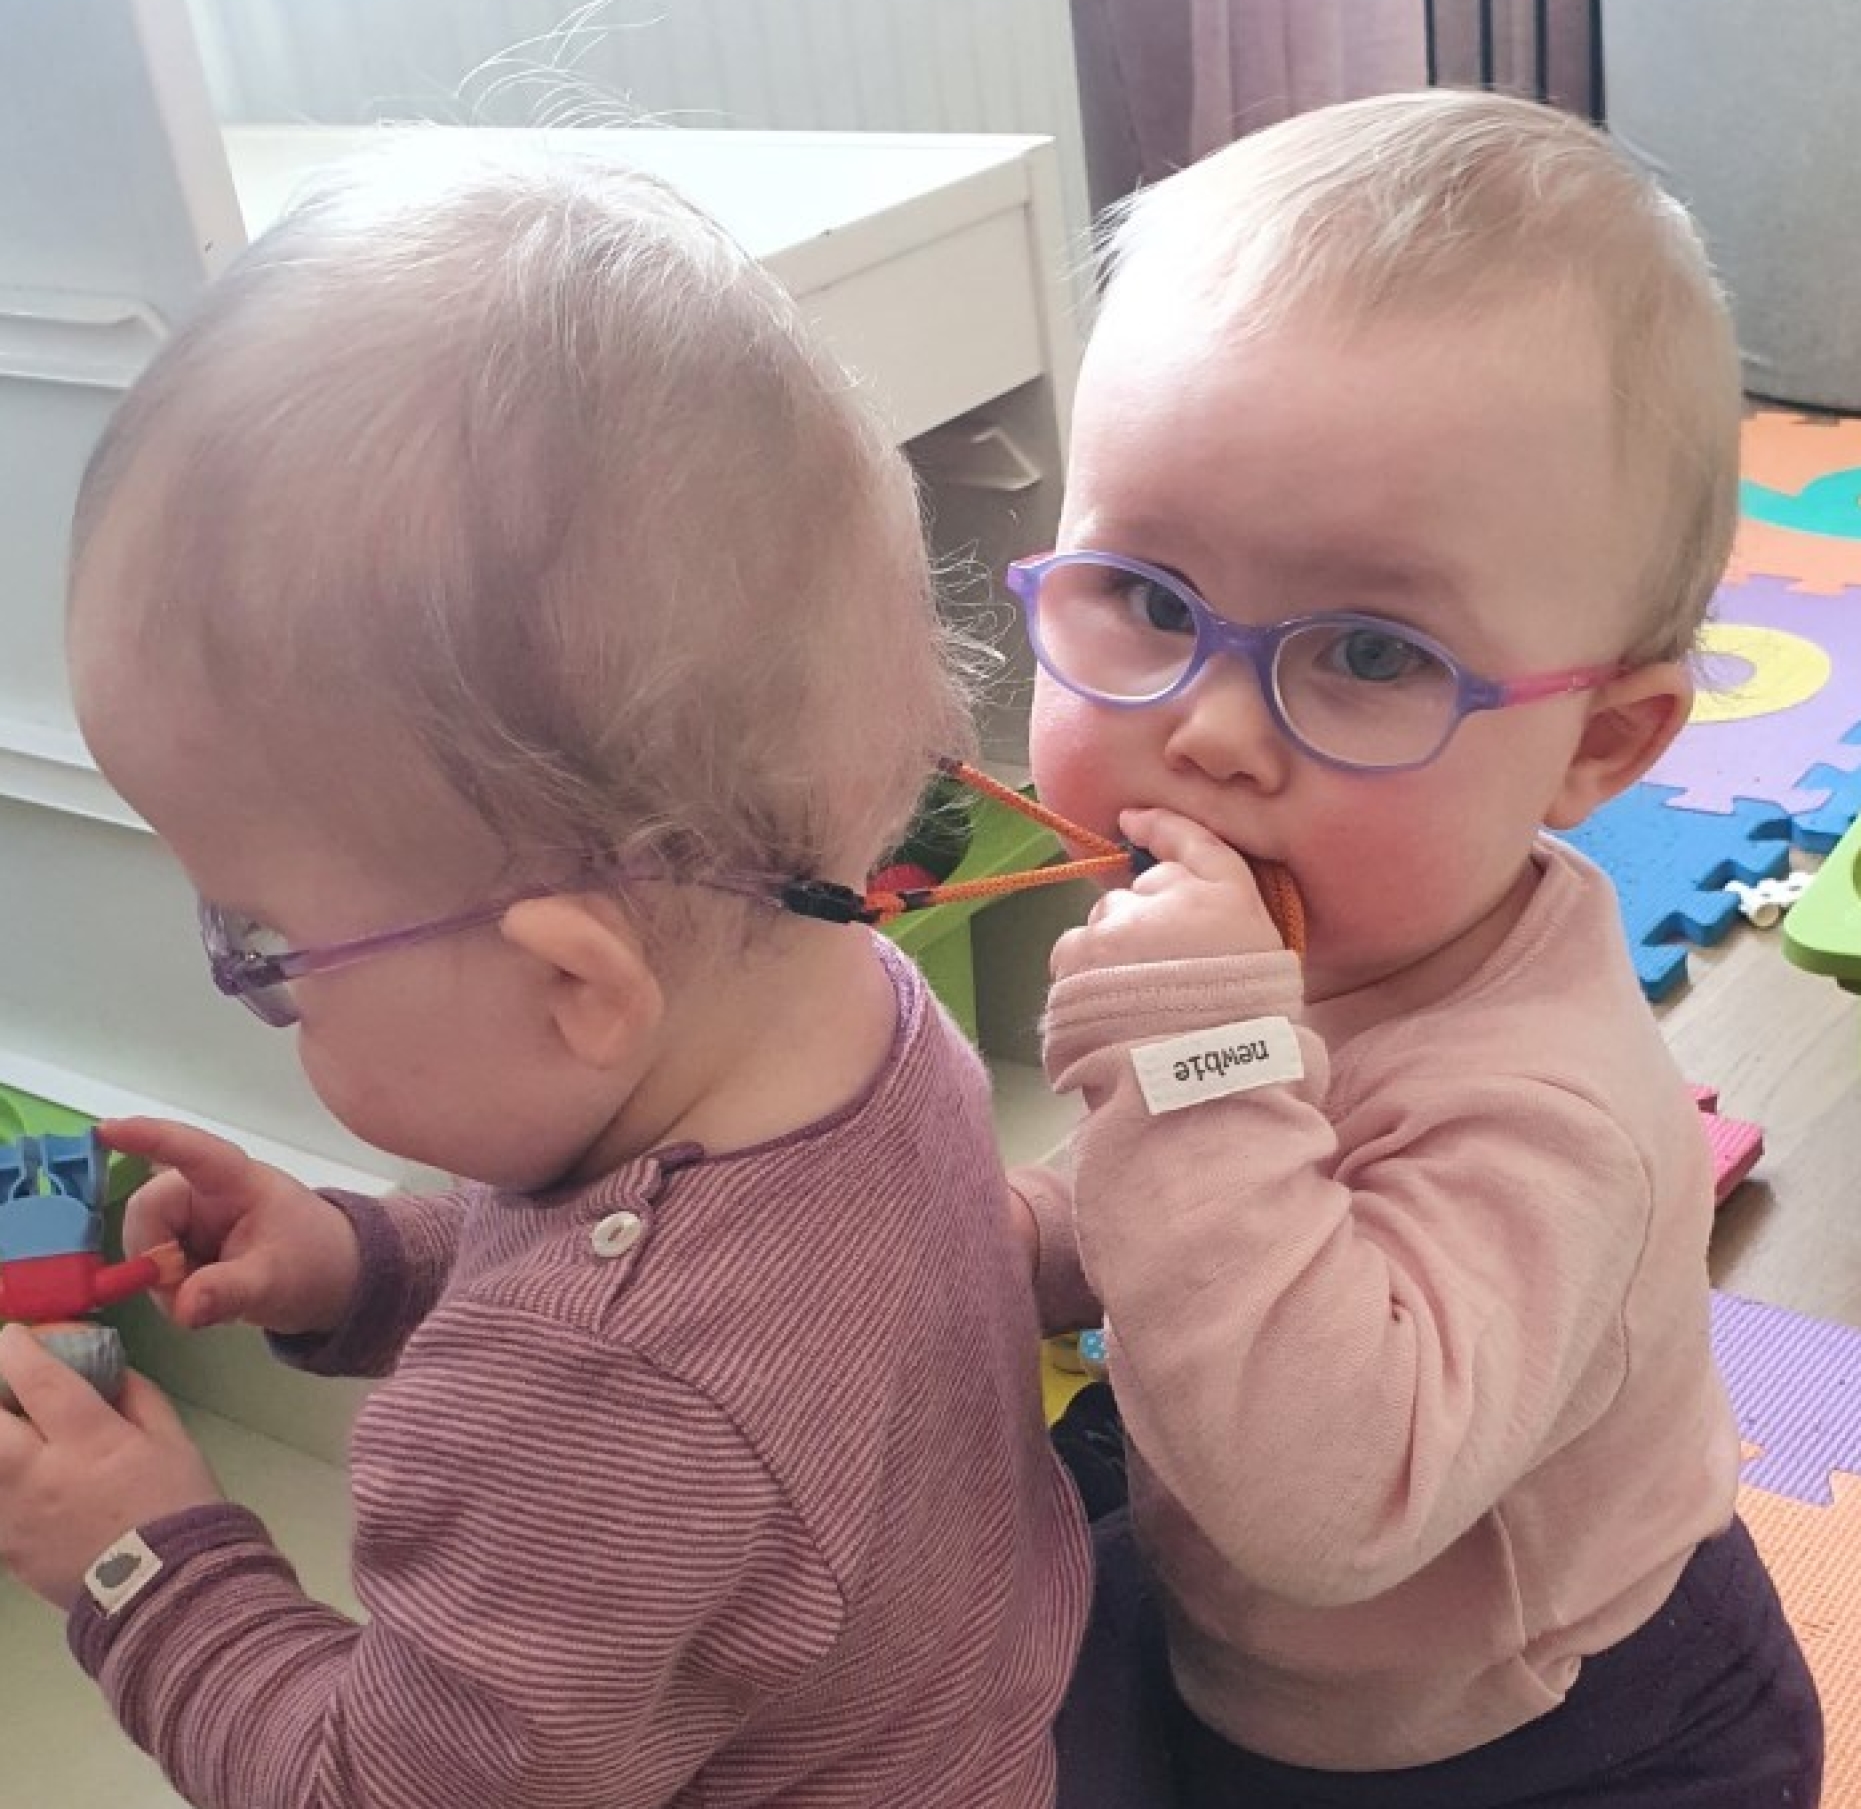 Mettes tvillinger på måneder fik briller: "Vi ikke, at dårligt" | Femina